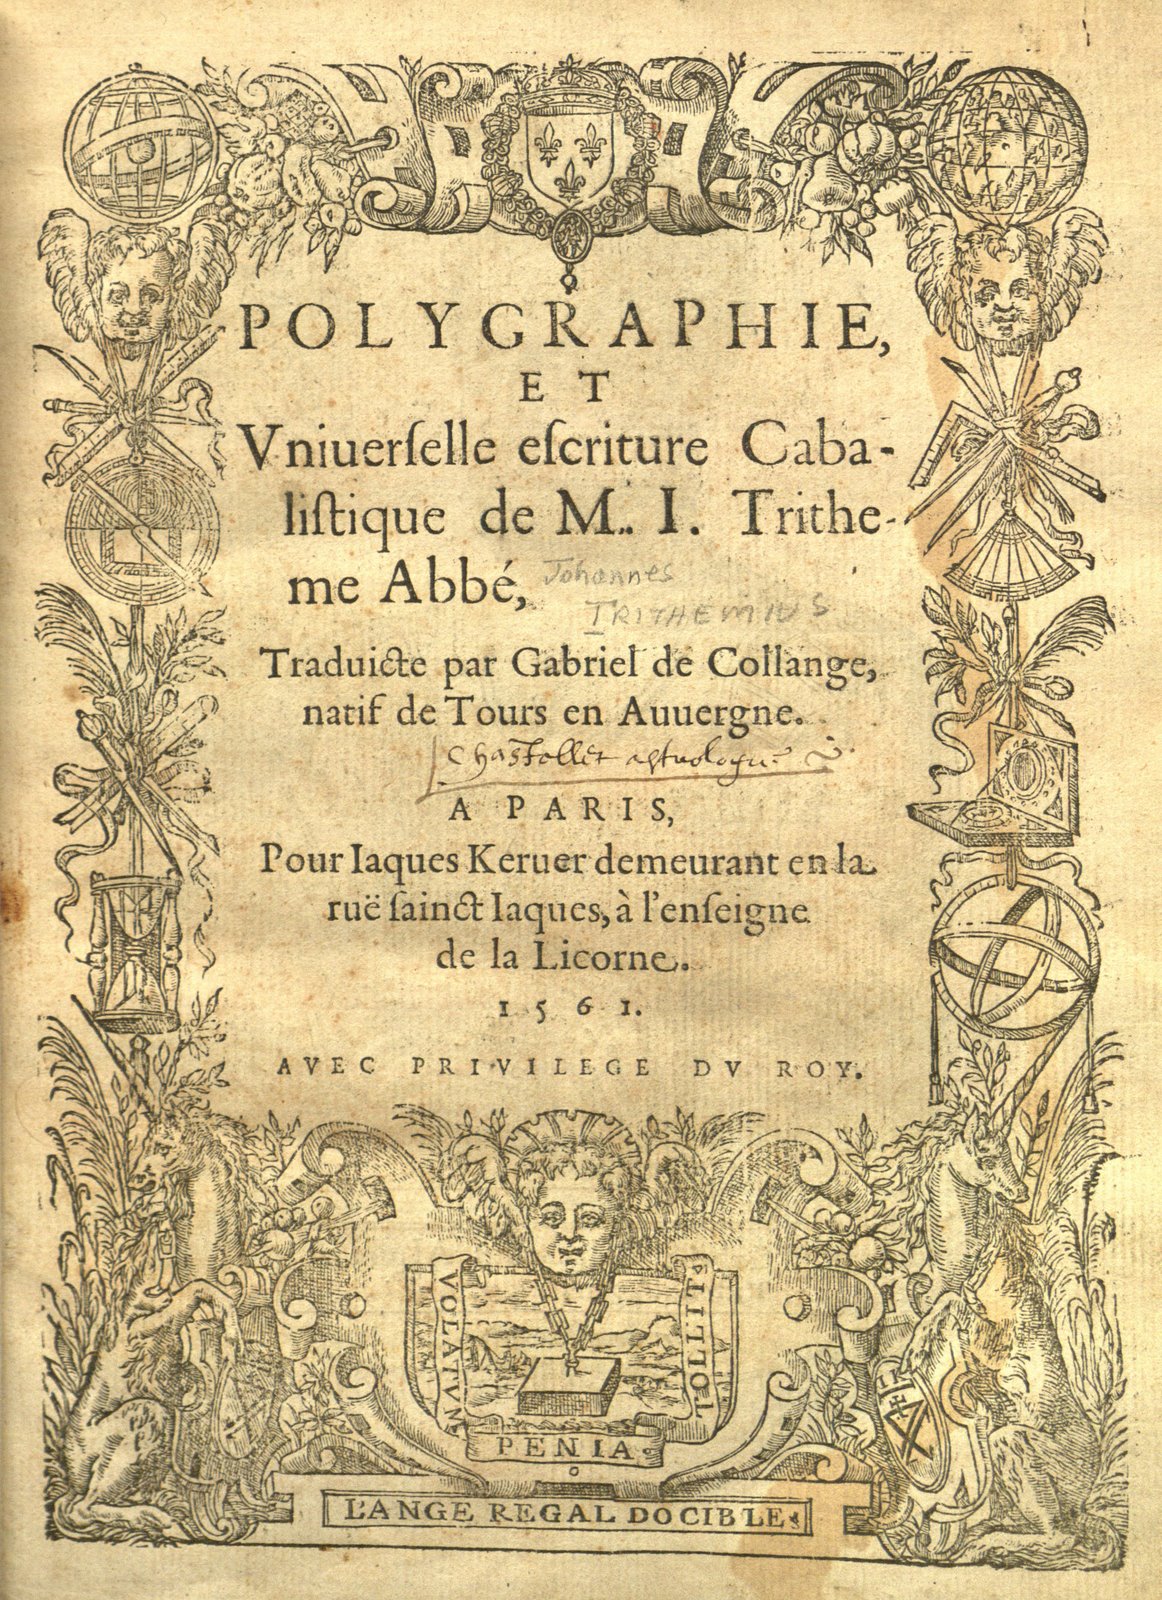 Title page of Polygraphie, et Universelle Es criture Cabalistique de M.I. Tritheme Abbé by Trithemius